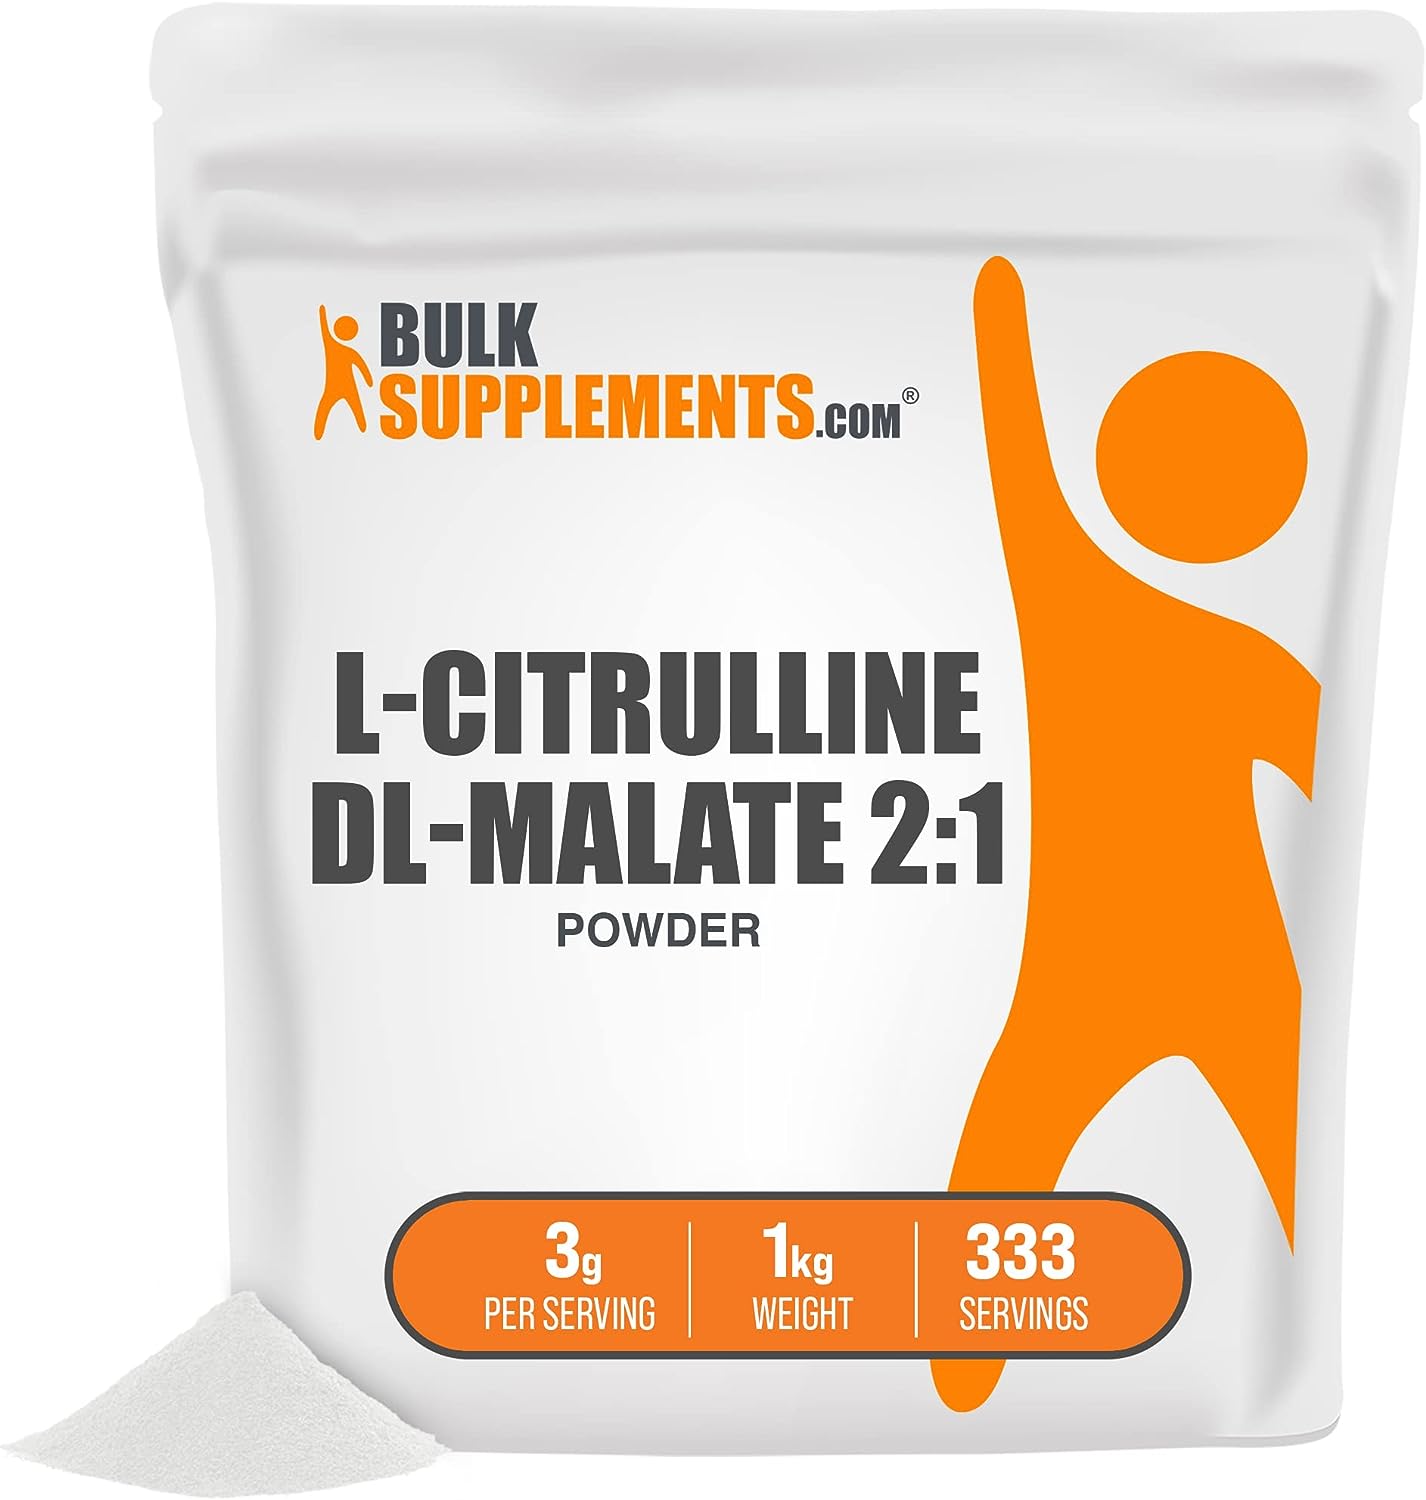  L-Citrulline DL-Malate 2:1 - L Citrulline Powder - Unflavored Pre Workout - Citrulline Malate Powder - Circulation Supplements - L Citrulline Malate (1 Kilogram - 2.2 lbs)